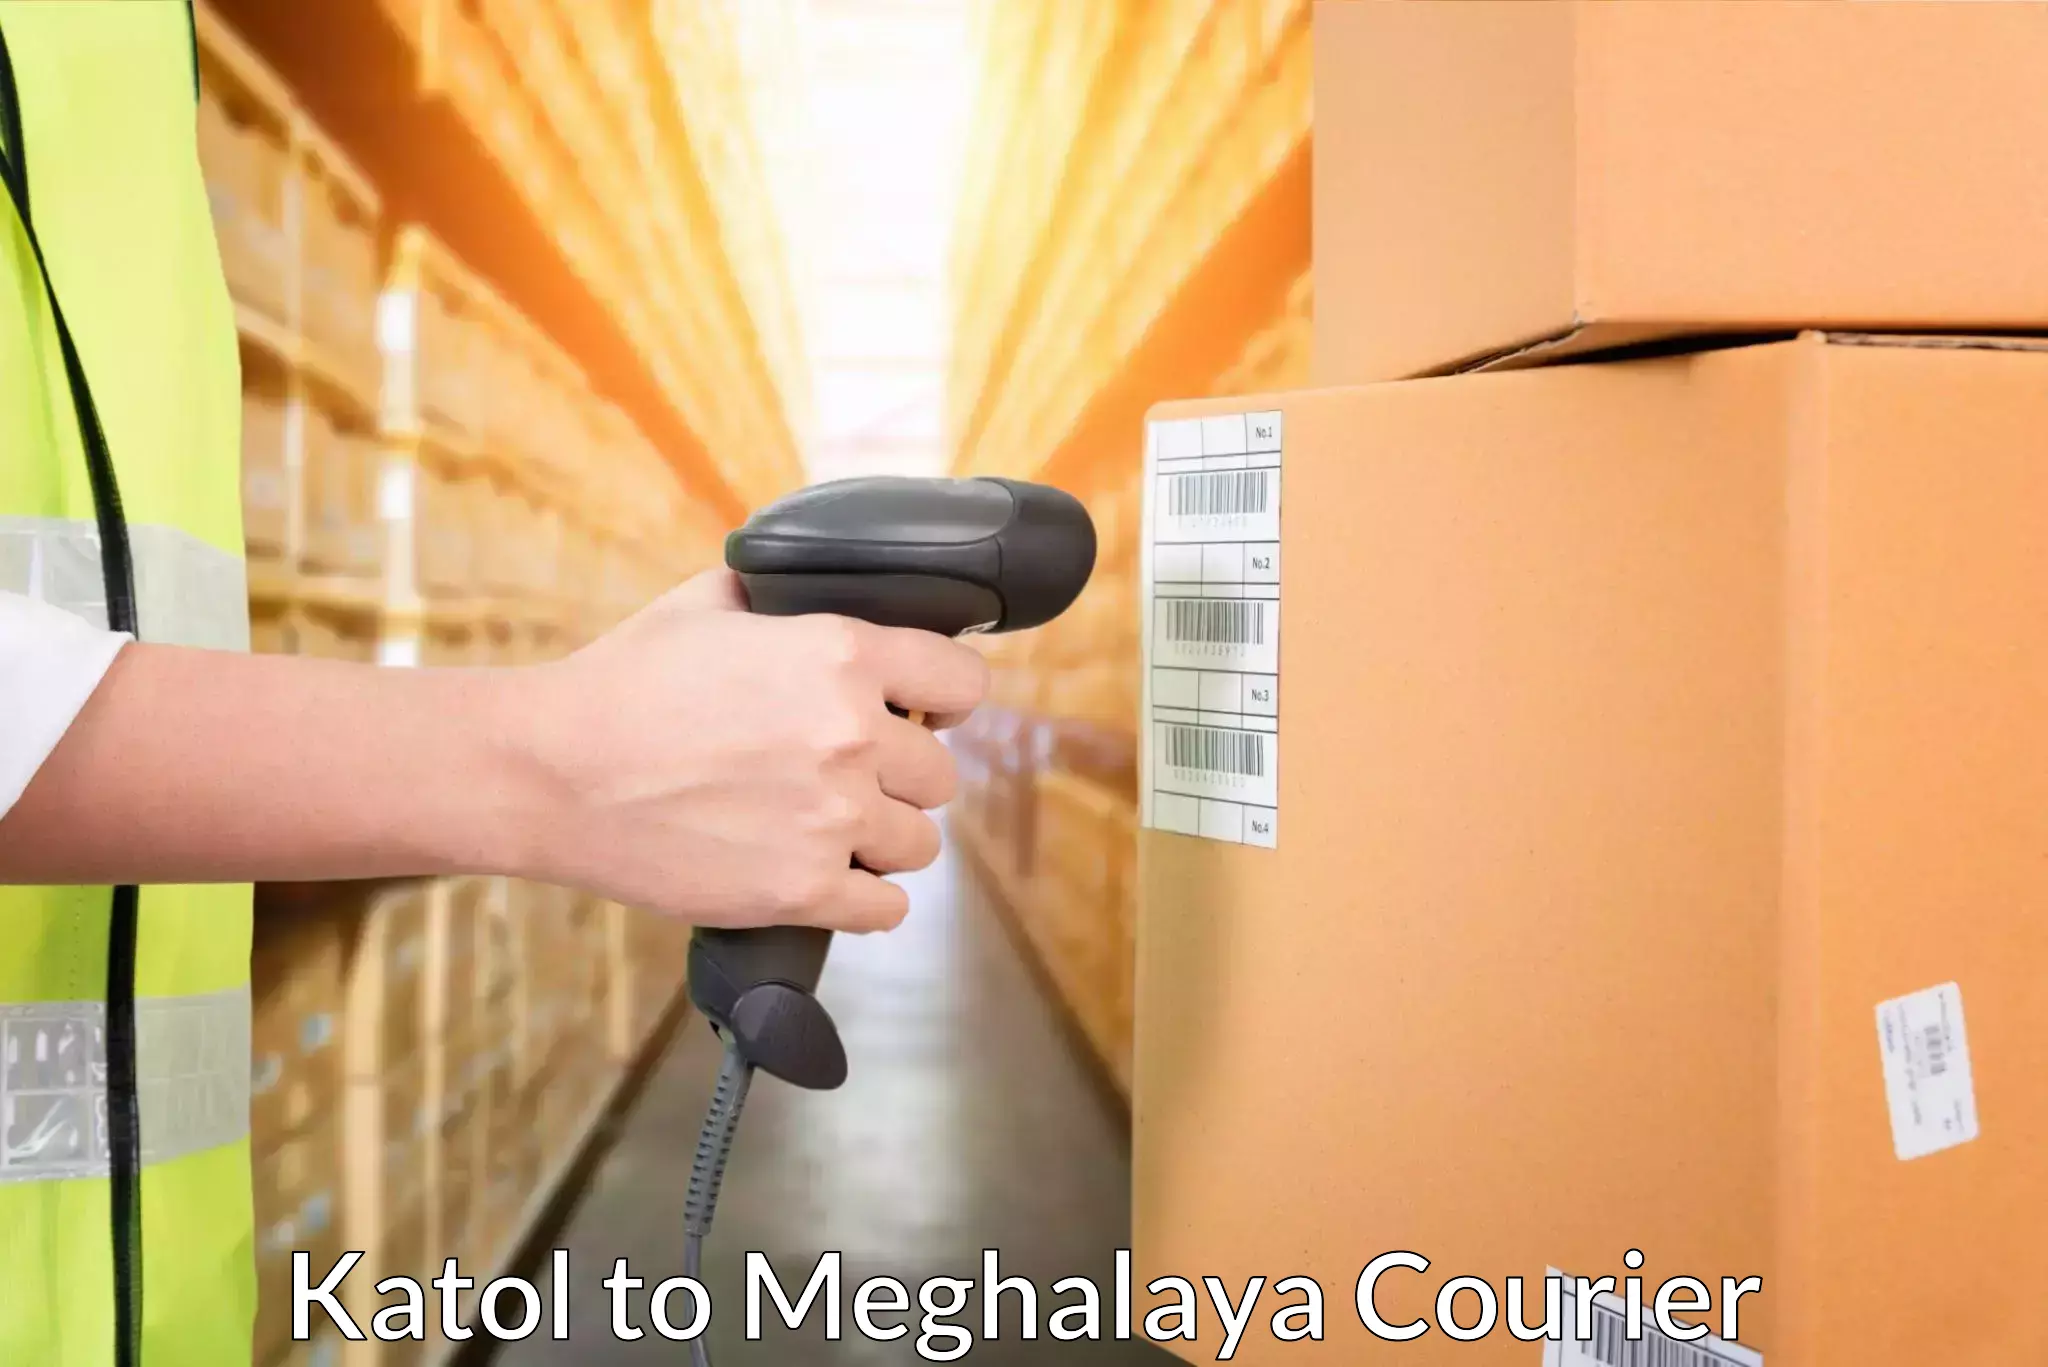 Courier service innovation Katol to Meghalaya